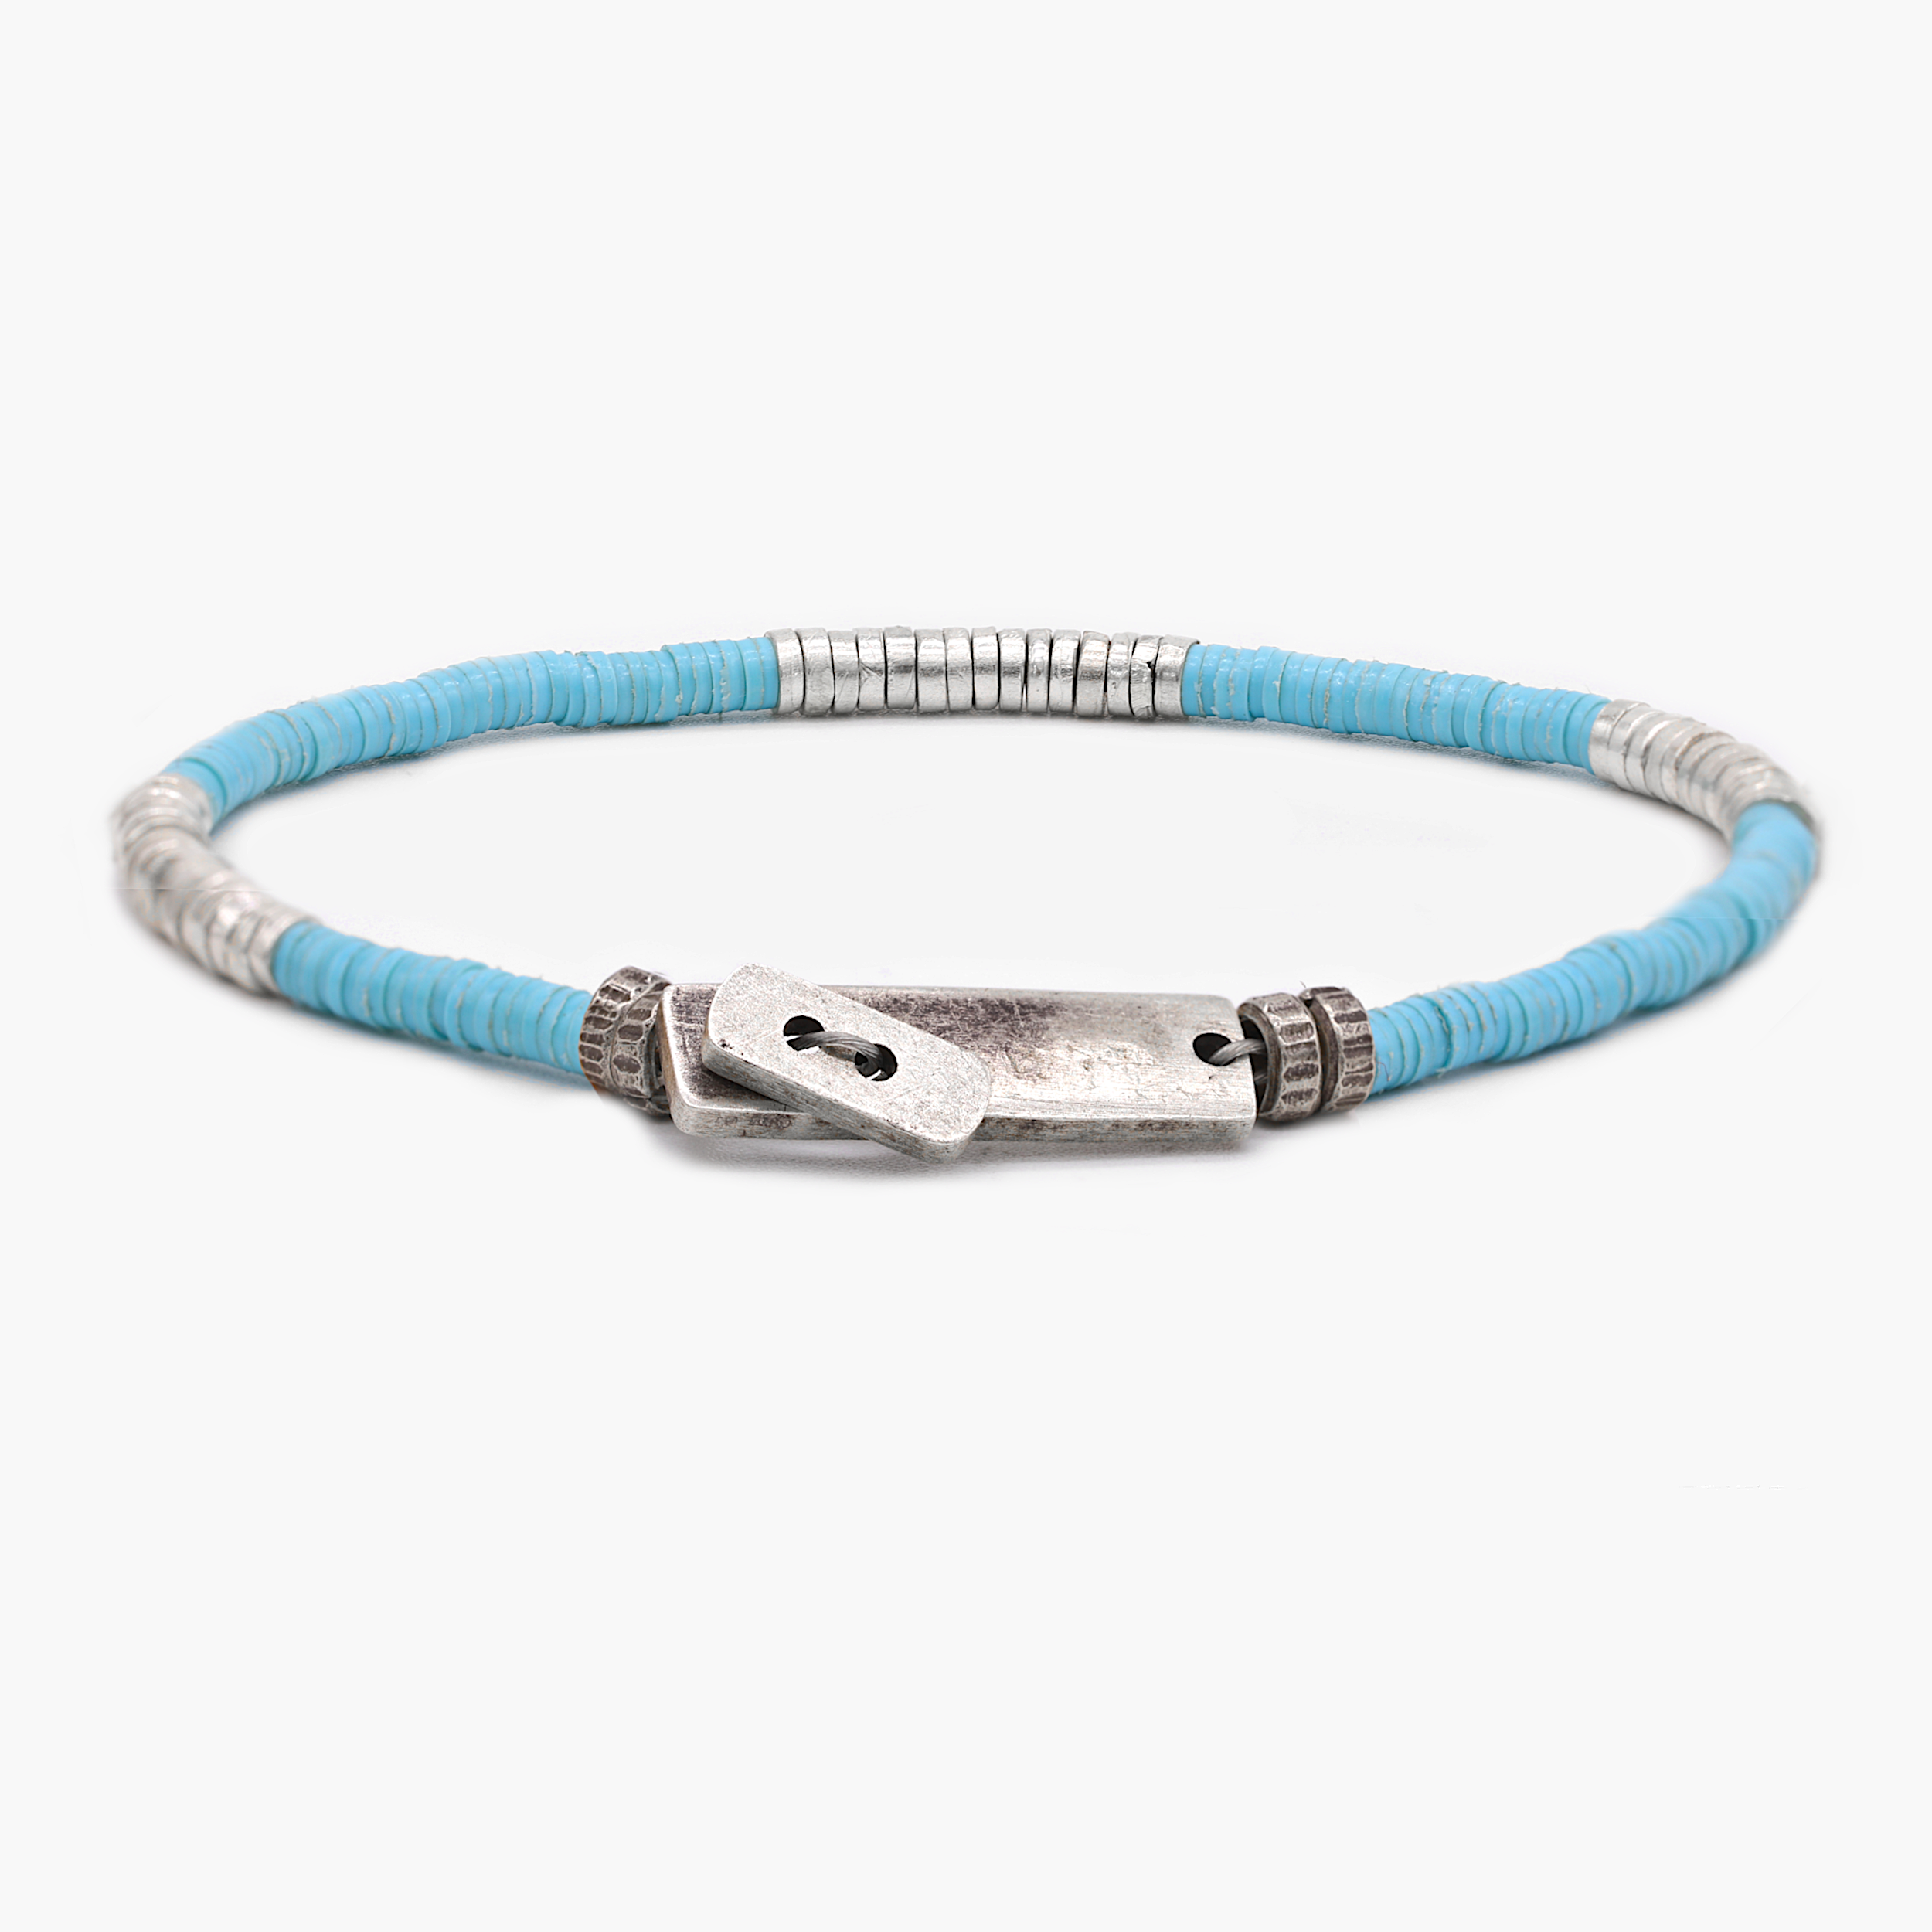 Bracelet With Recycled Vinyl And Sterling Silver Beads (Light Blue)-Bracelet-Kompsós